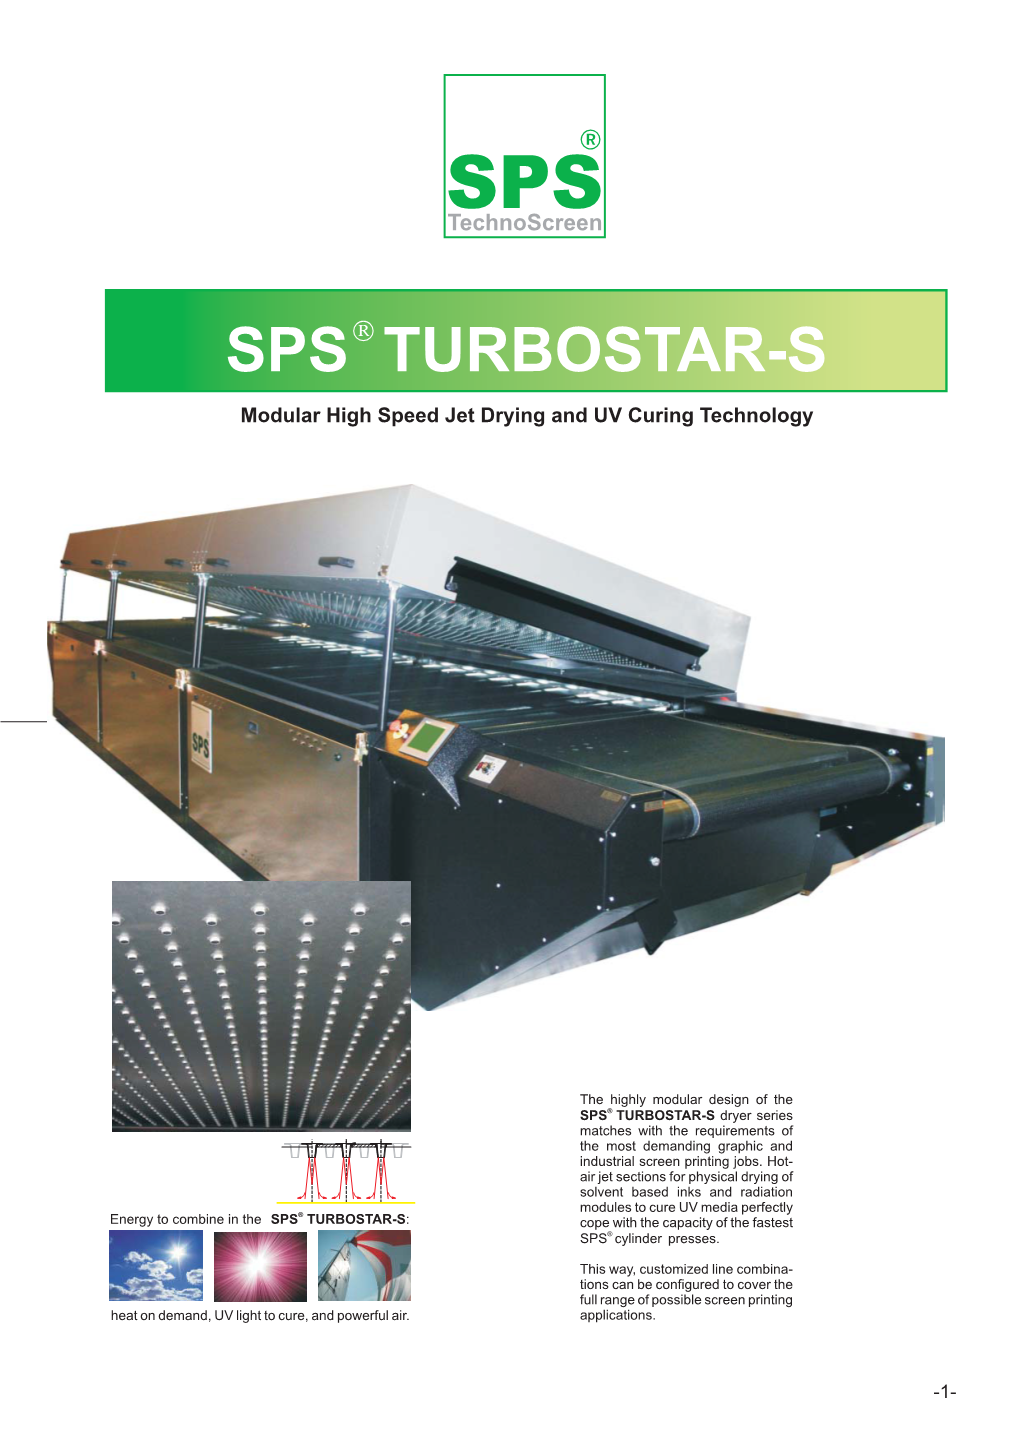 Sps Turbostar-S